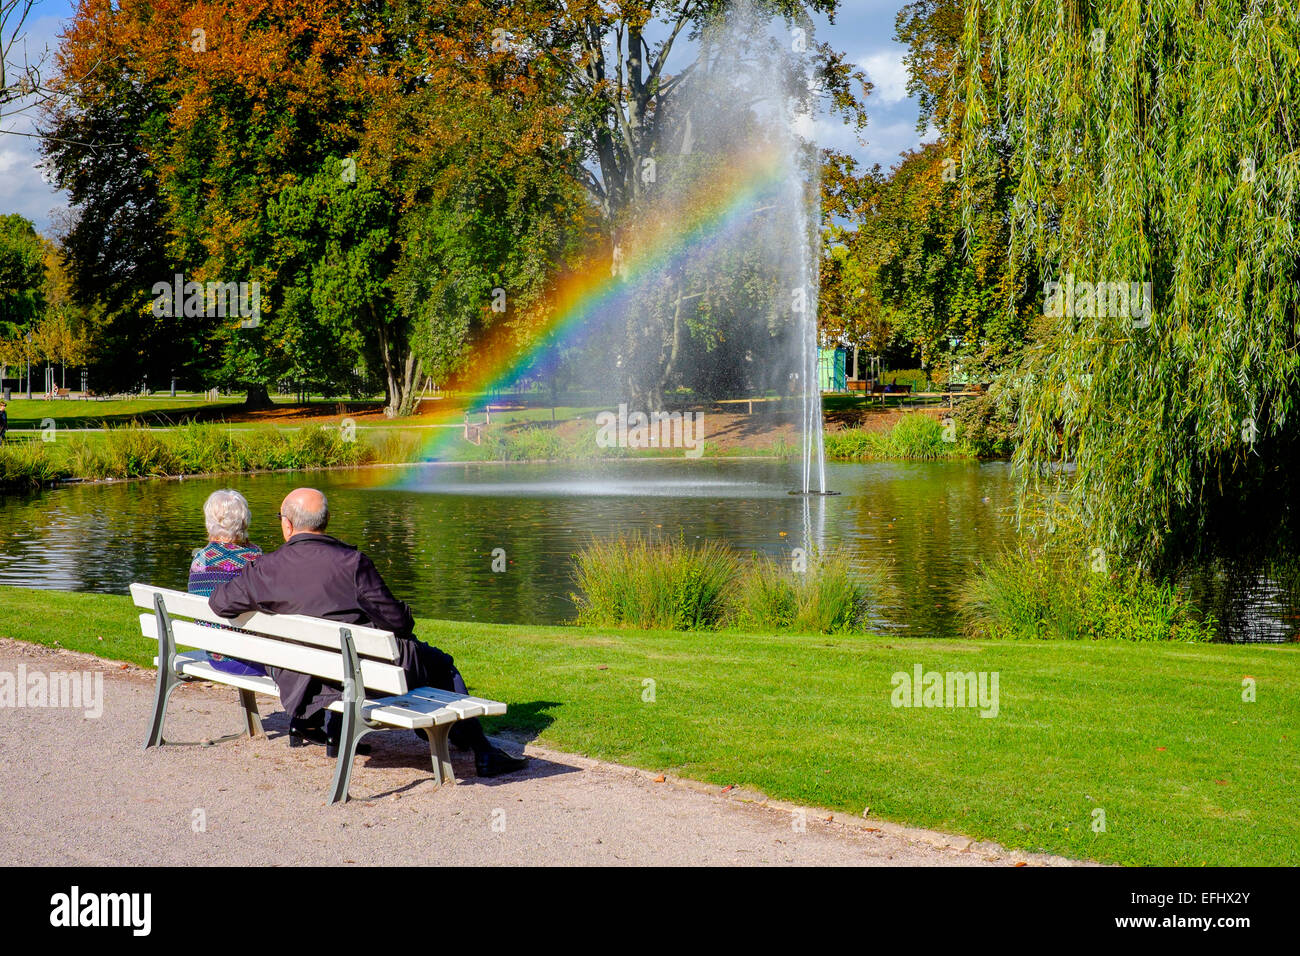 Vieux couple sur le banc, jet d'eau avec rainbow, Parc de l'Orangerie parc, Strasbourg, Alsace, France, Europe Banque D'Images